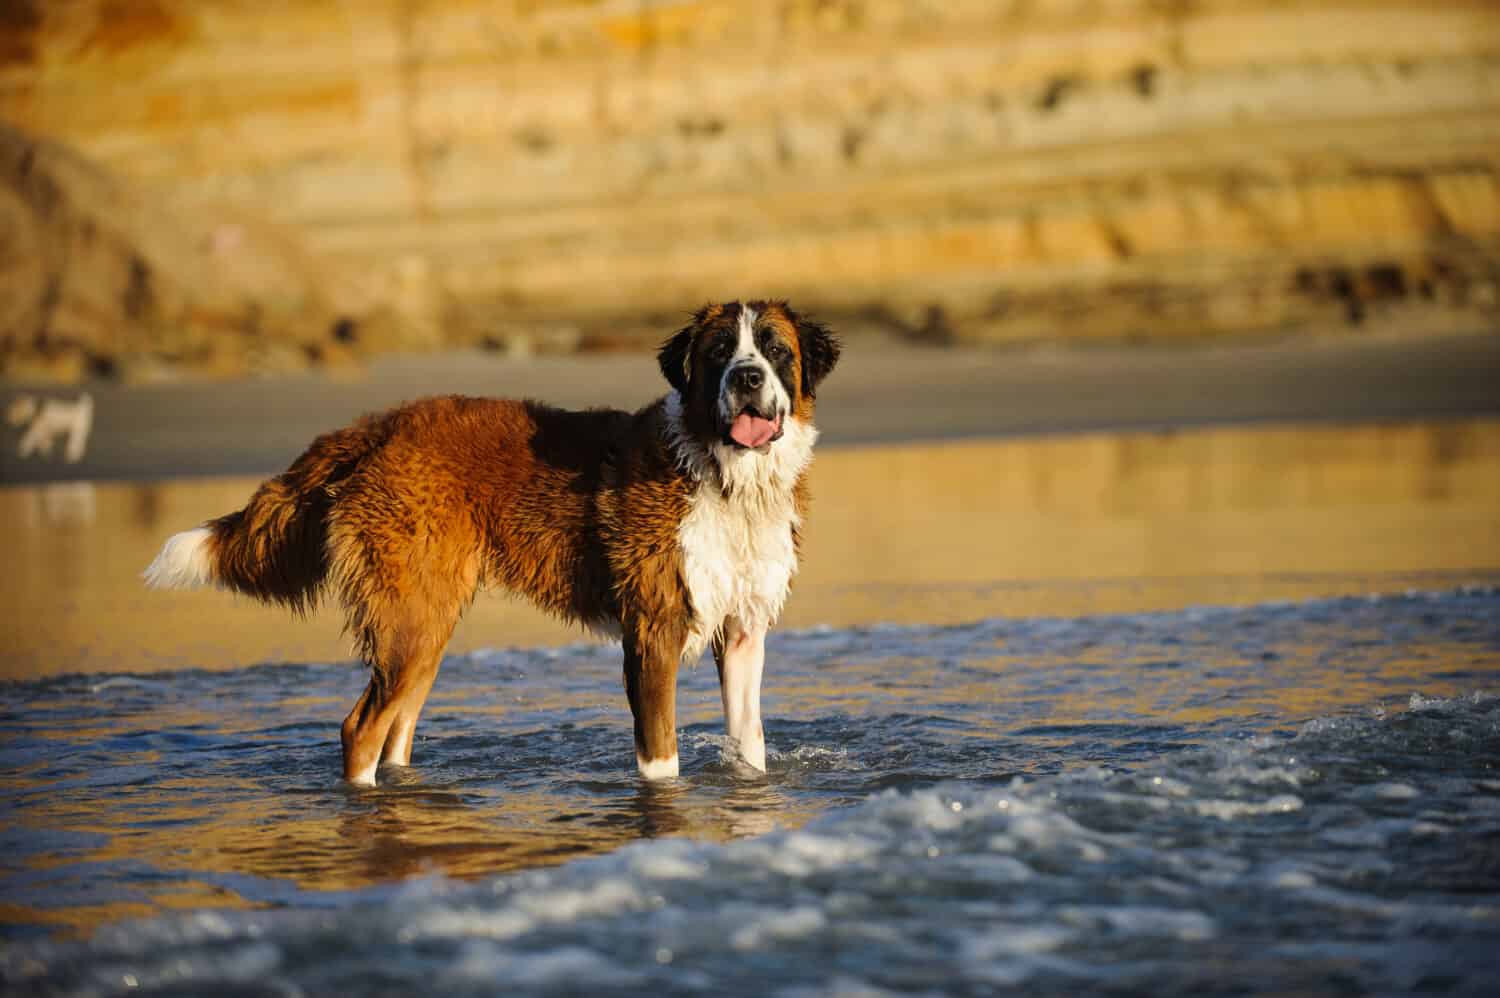 Saint Bernard dog outdoor portrait at beach